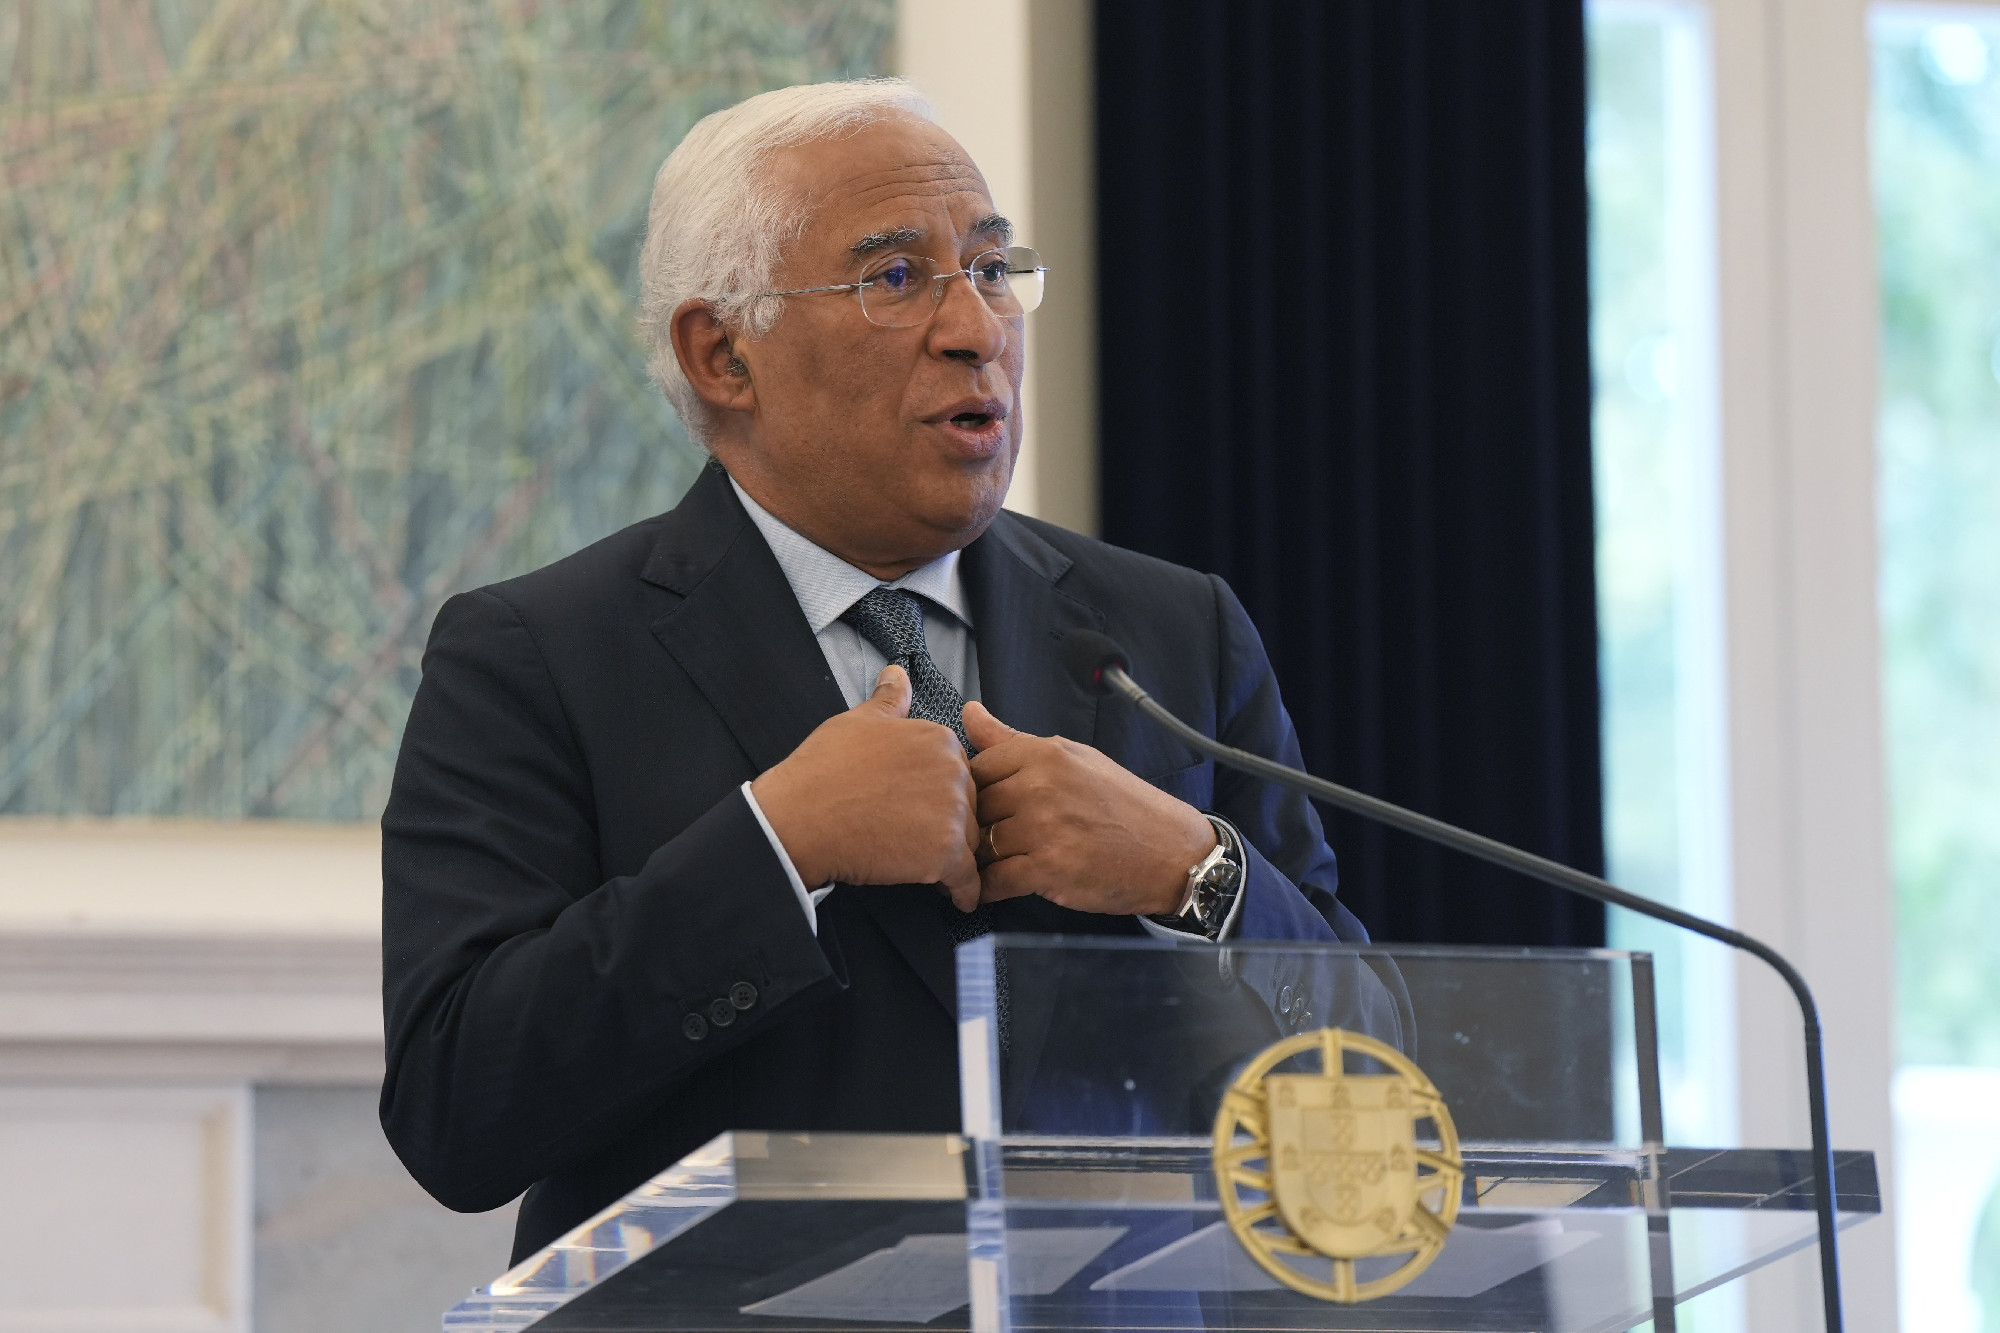 Lemondott a portugál miniszterelnök, miután házkutatást tartottak nála